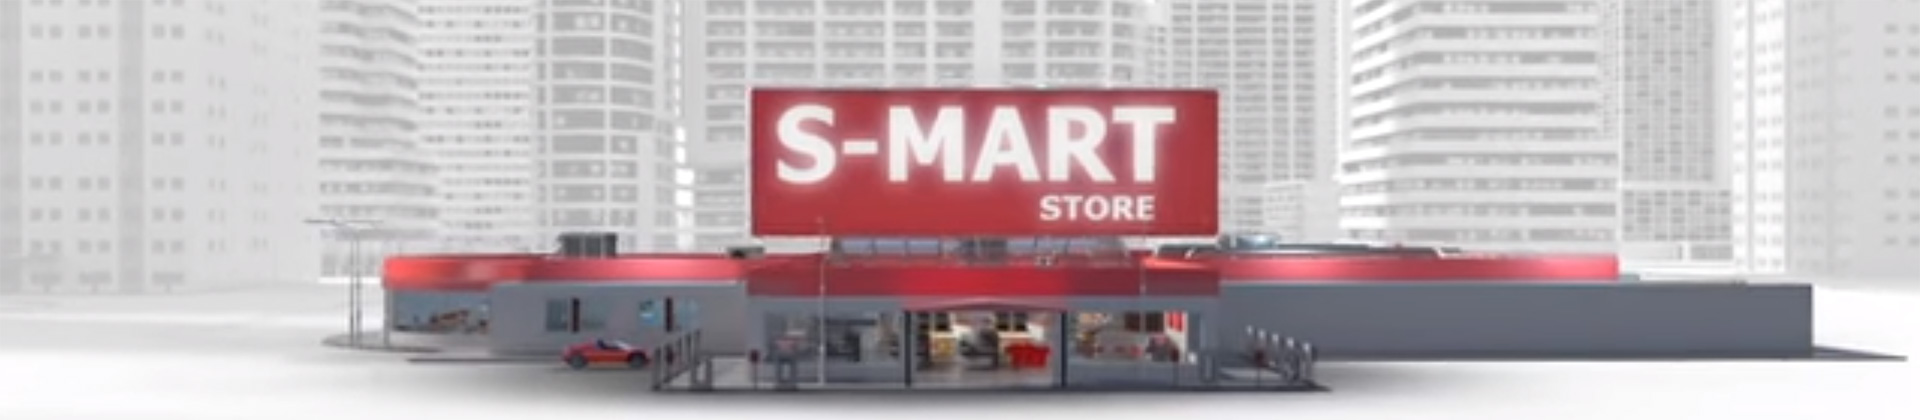 Video sugli smart store - Danfoss